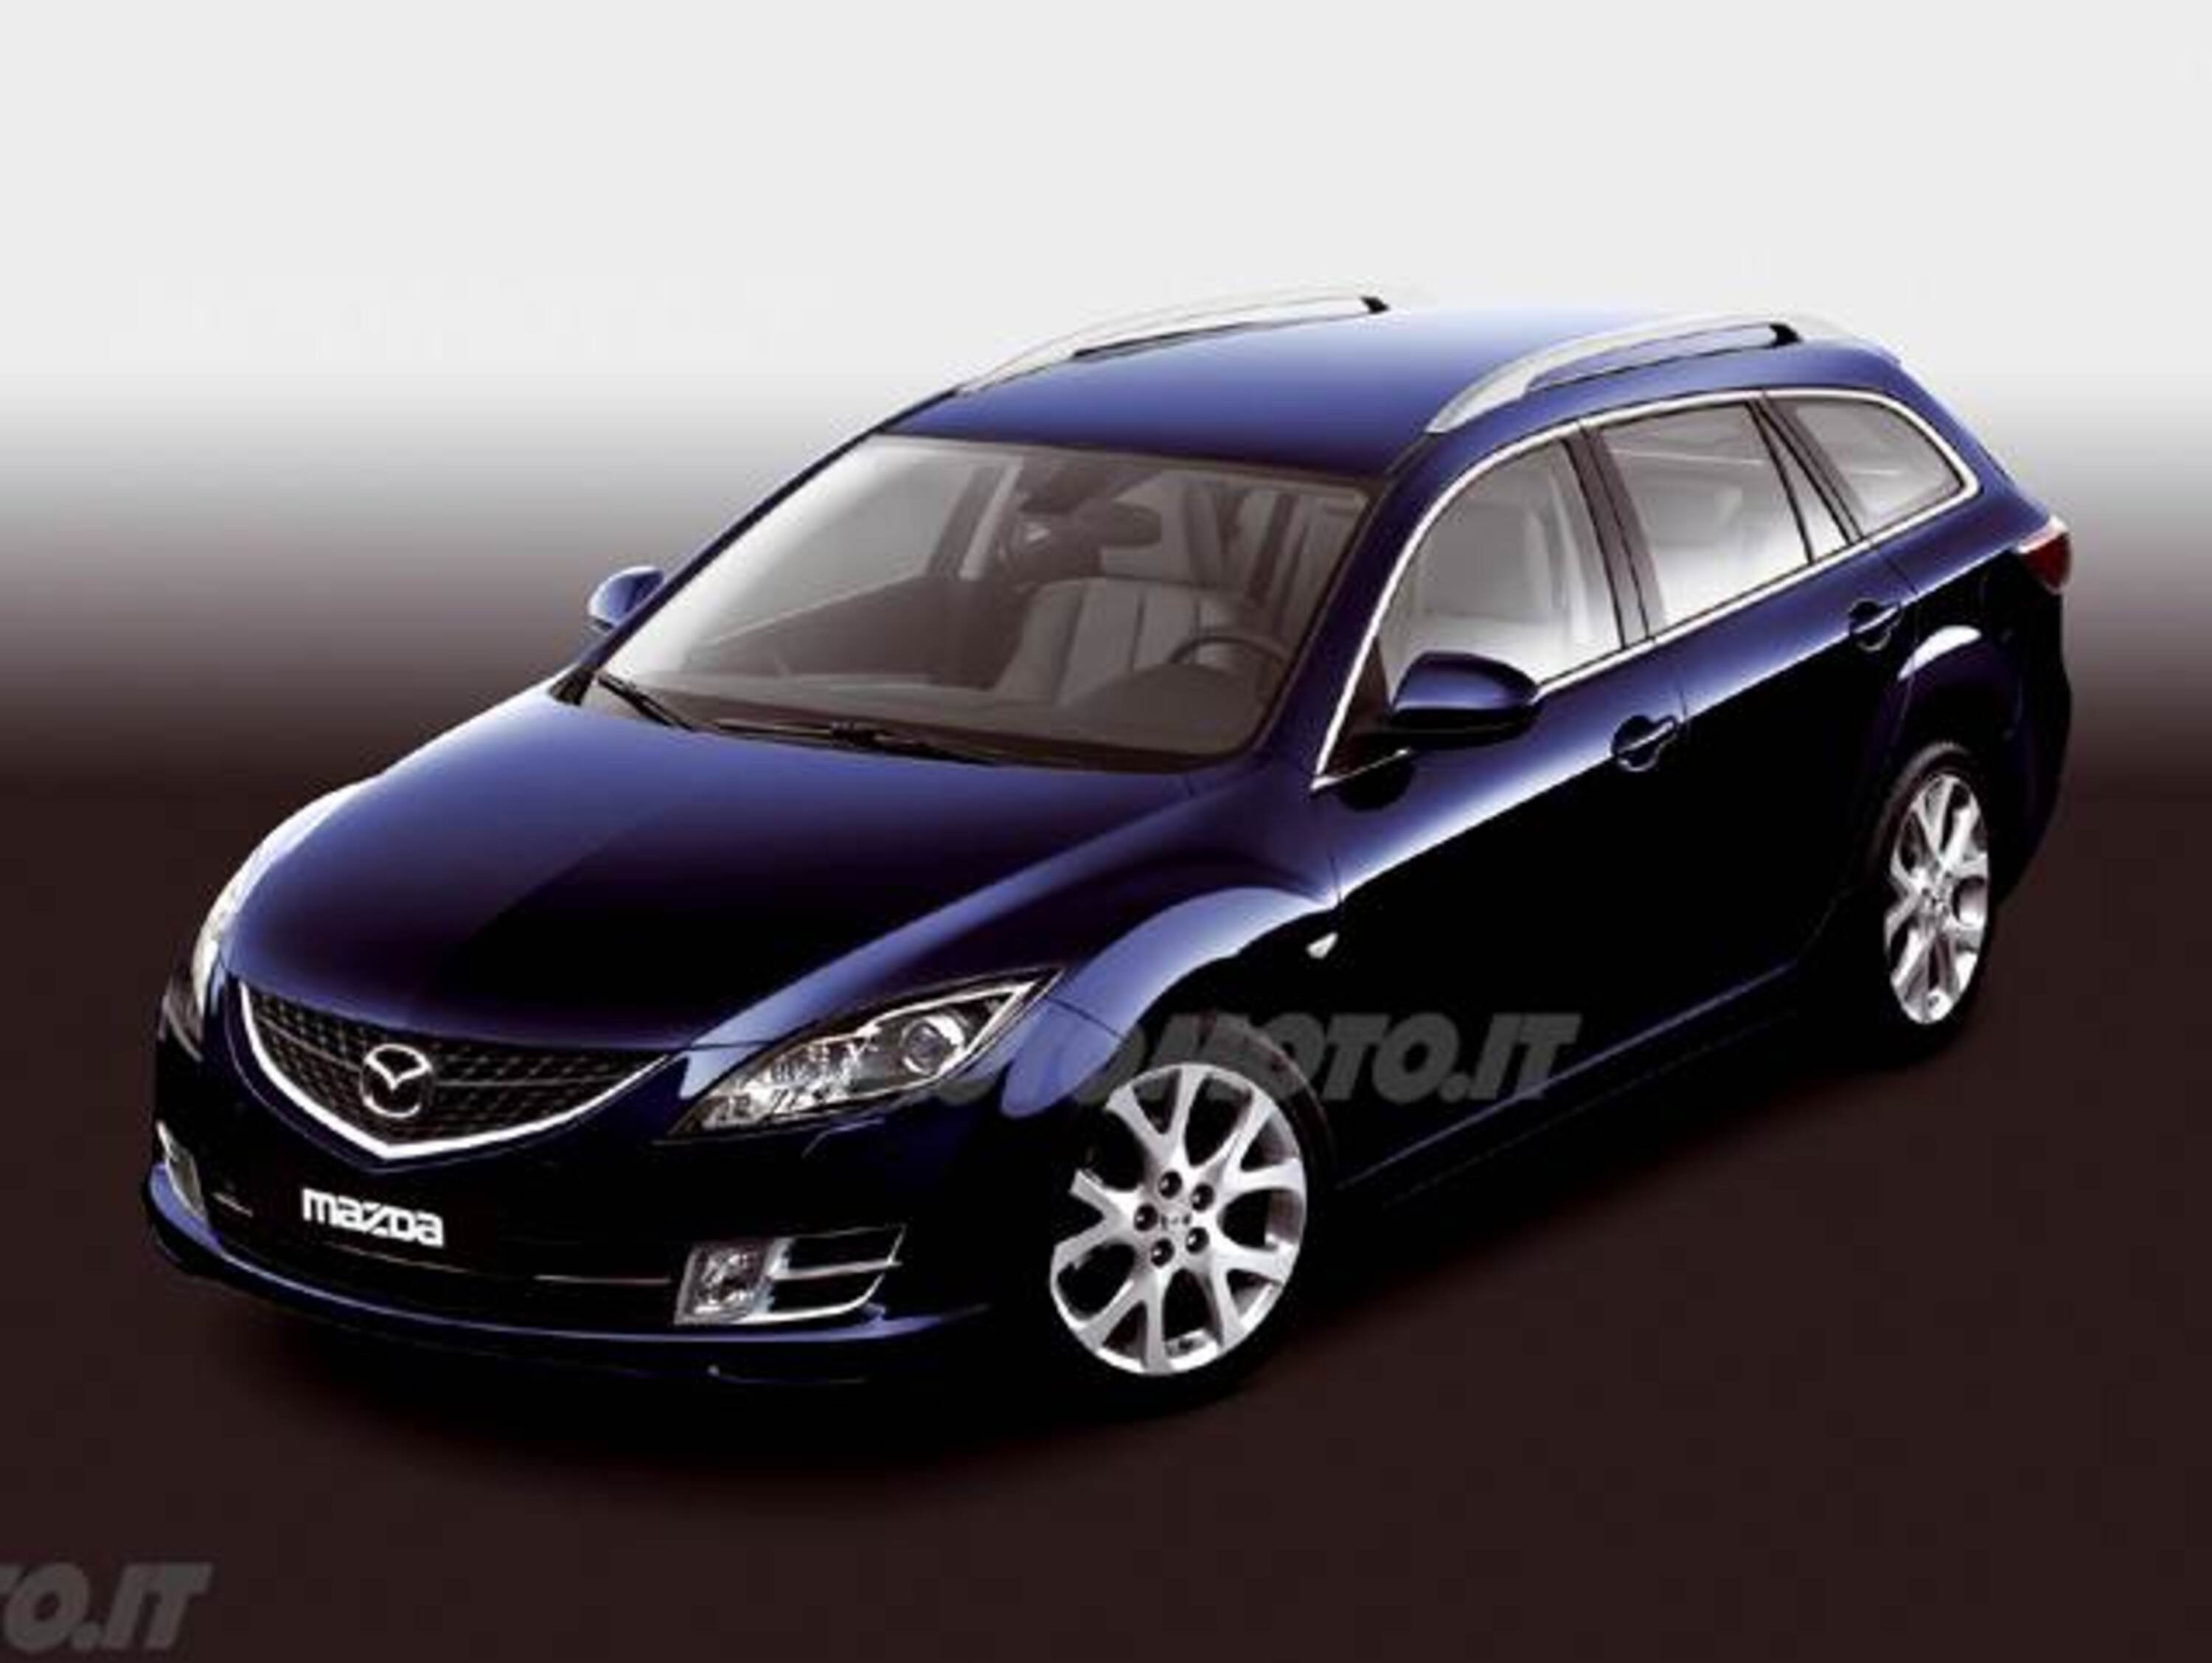 Mazda Mazda6 Station Wagon 2.0 CD 16V 140CV Wag.Exp.Special